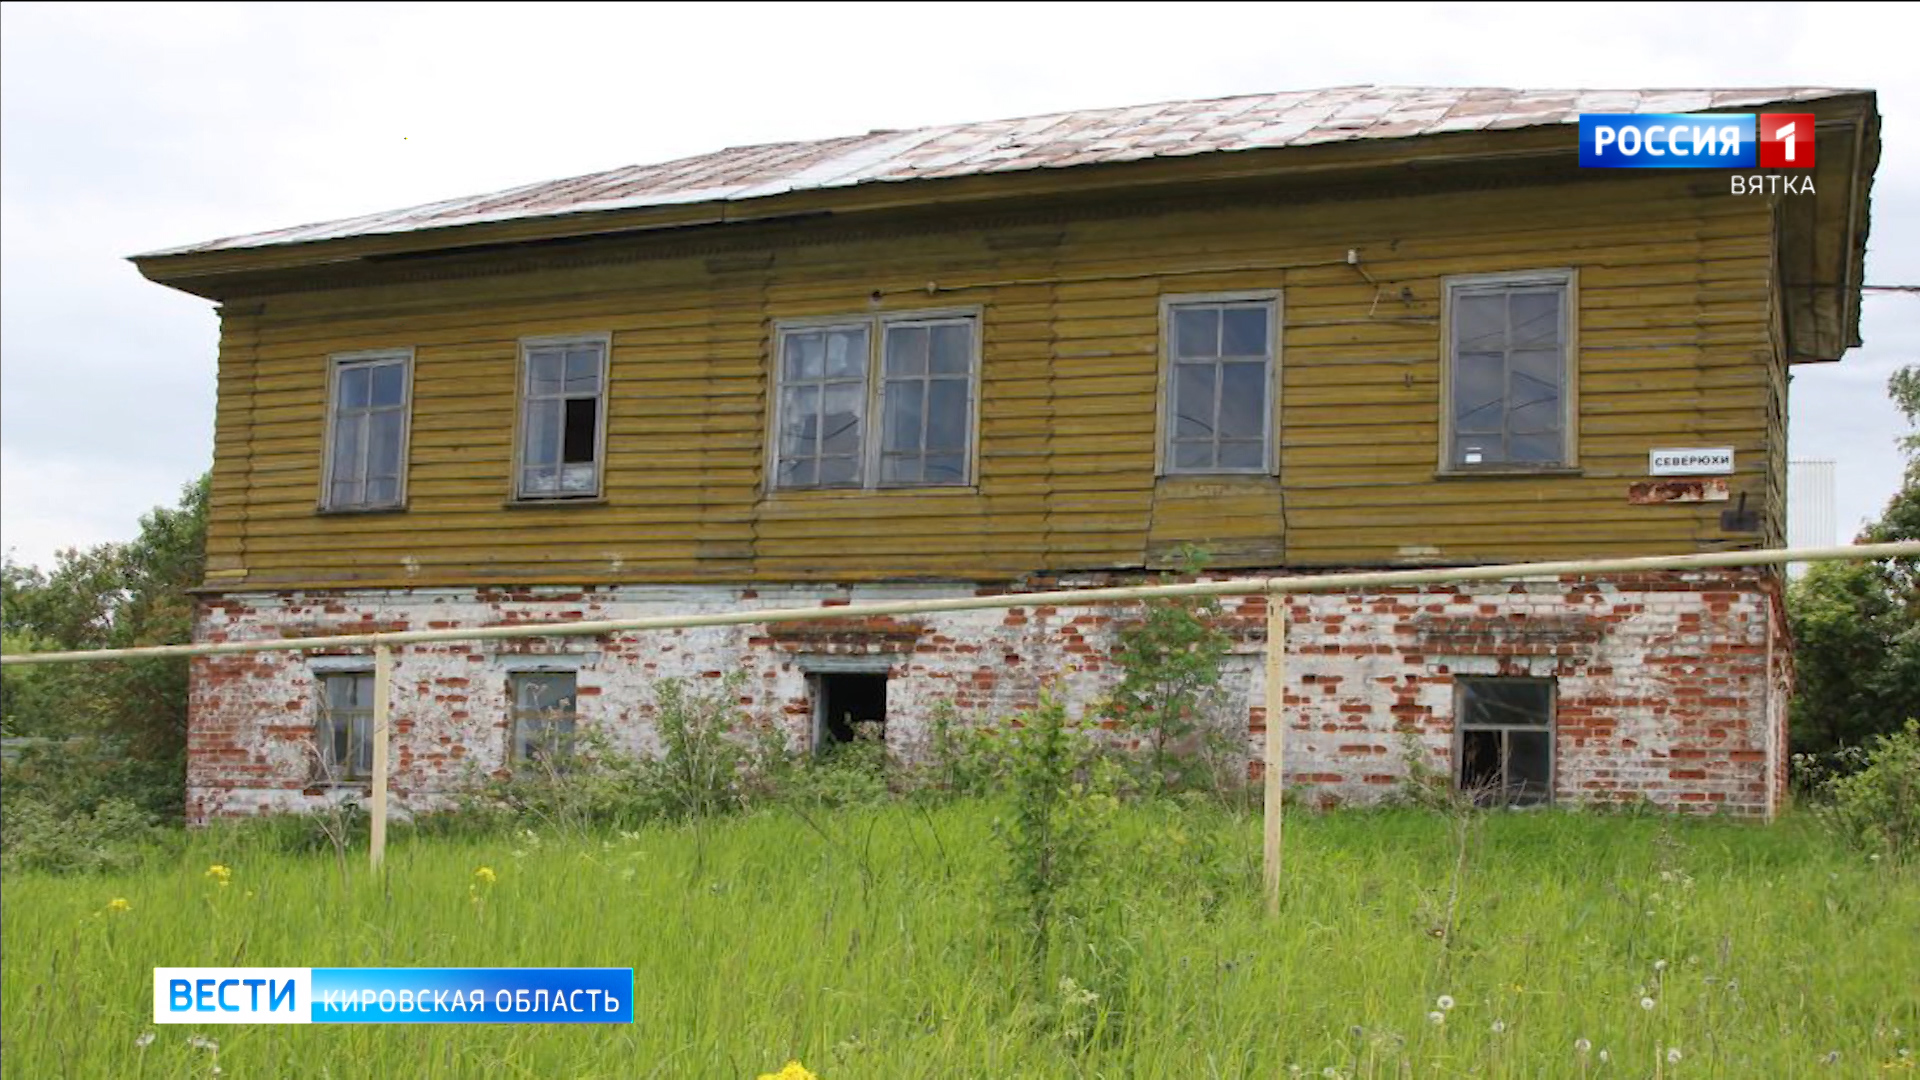 В Кирово-Чепецке разрушается историческое здание